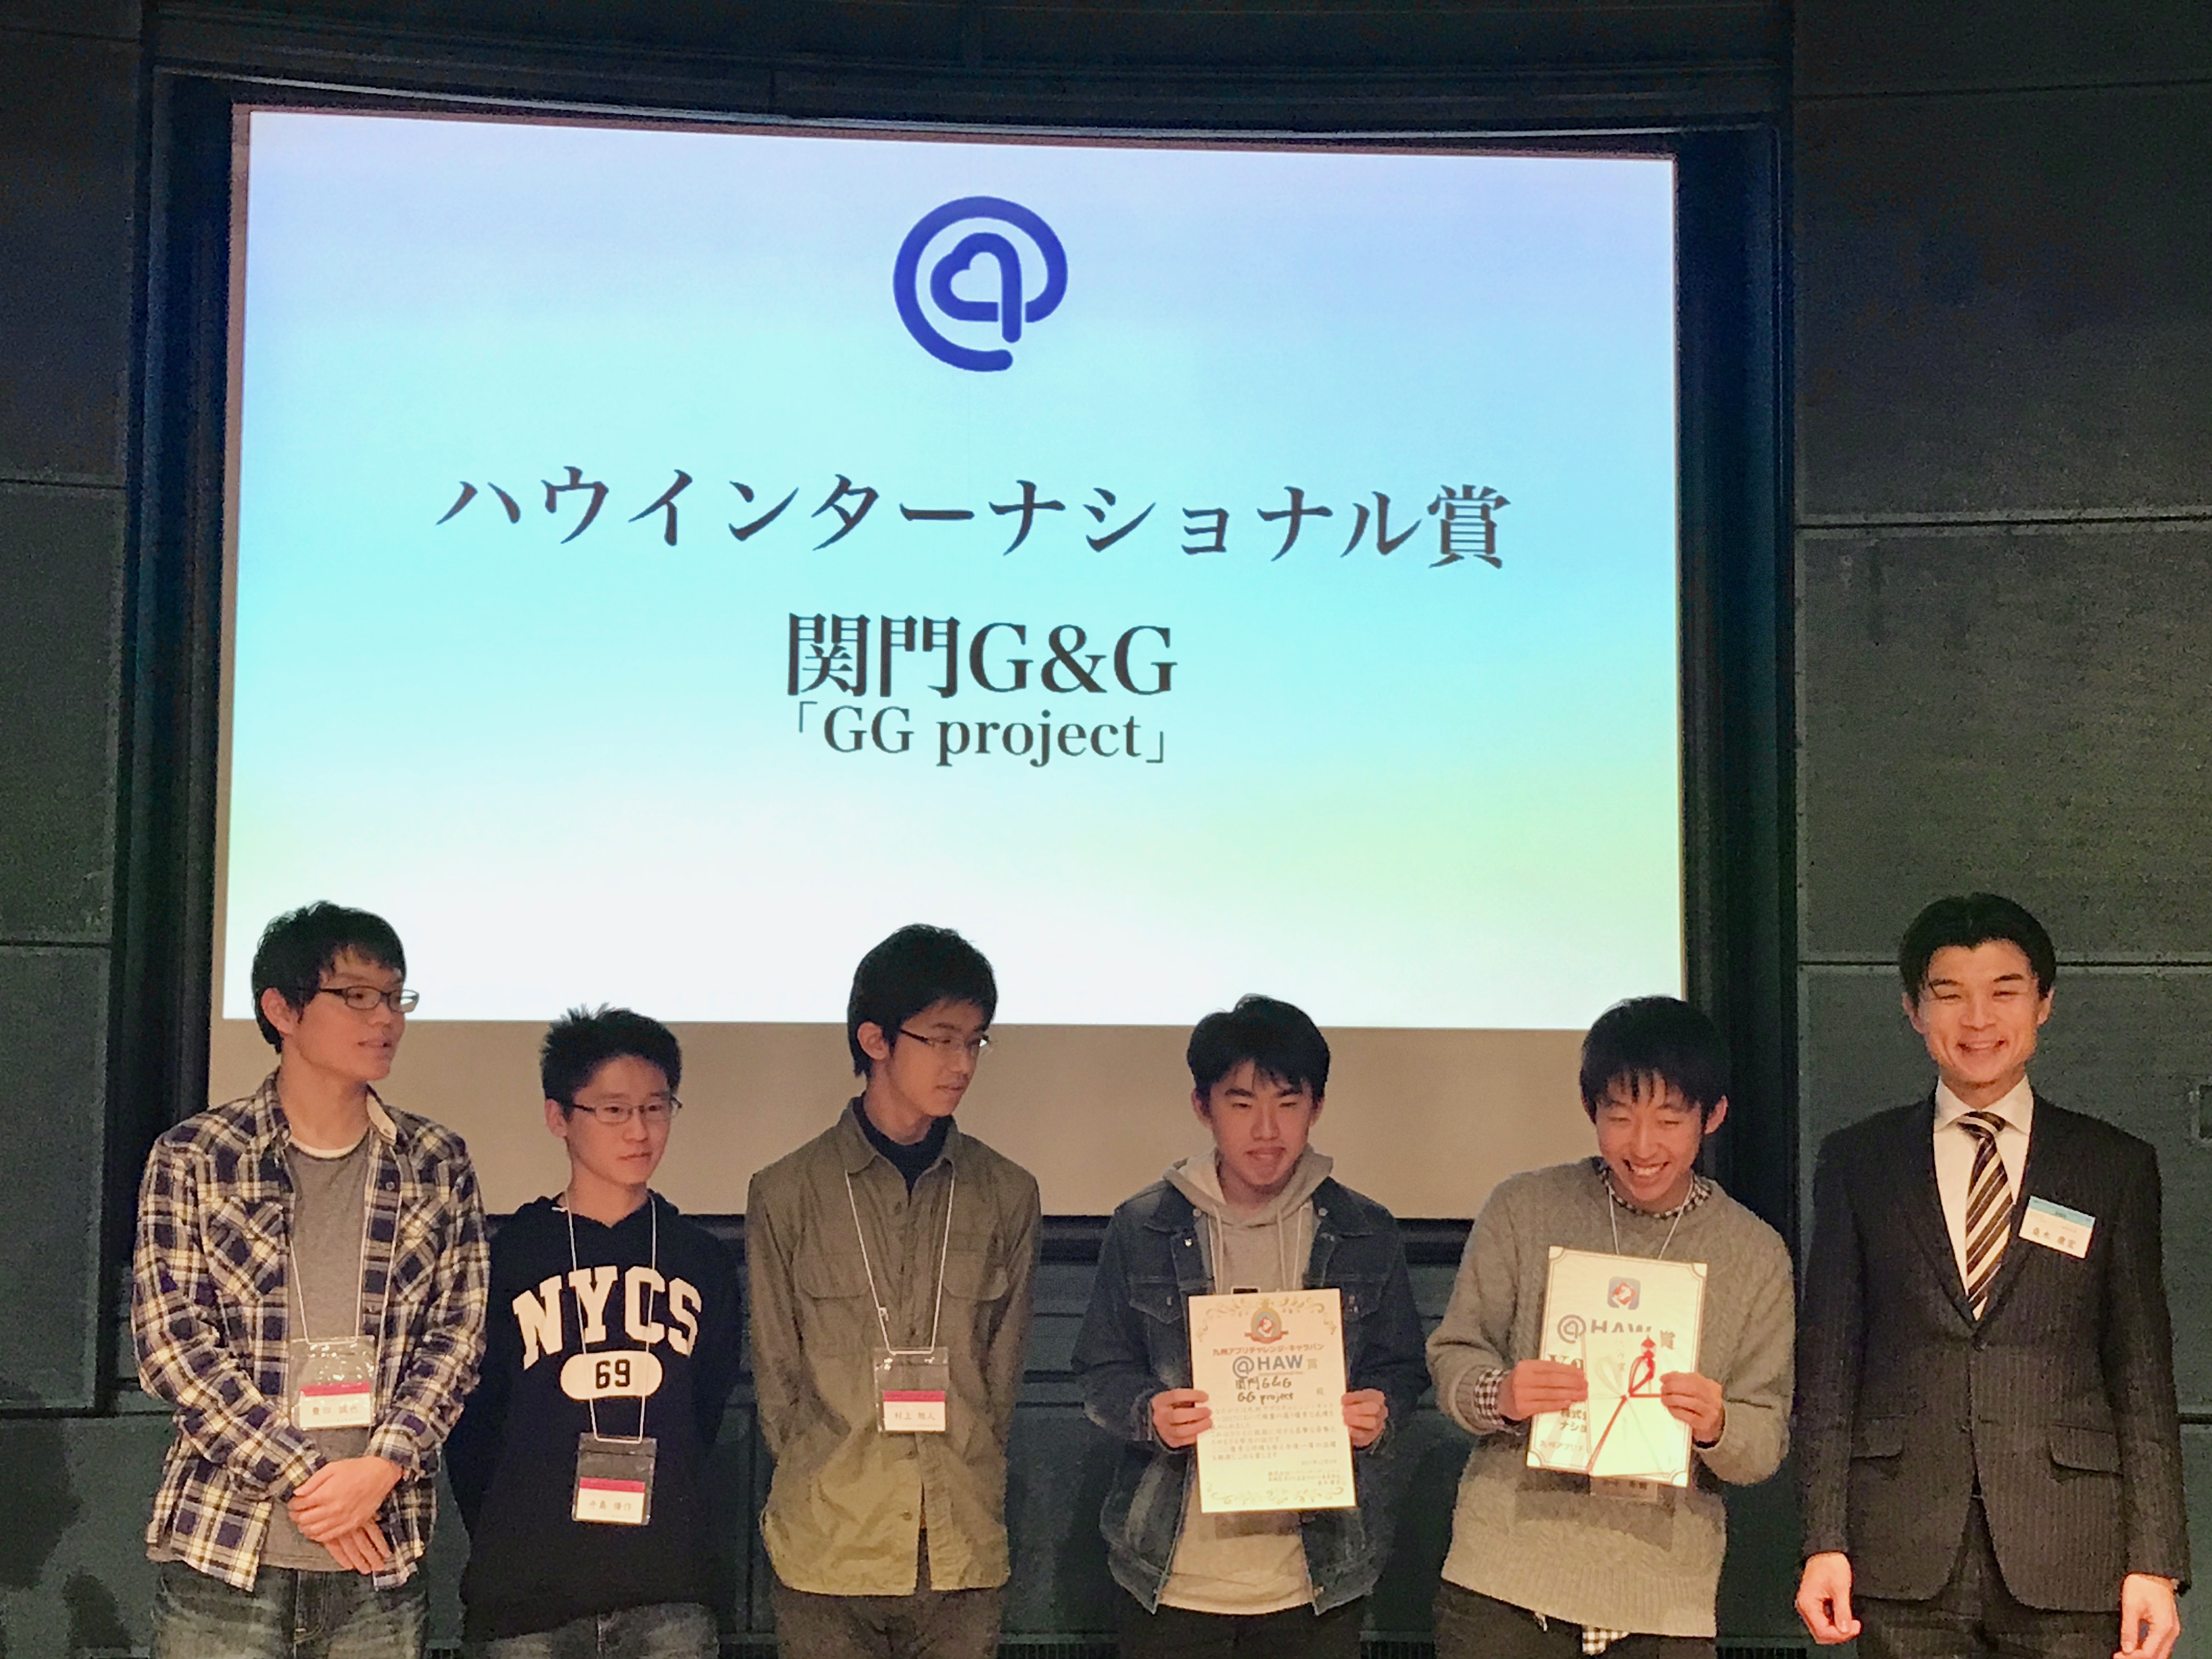 ハウインターナショナル賞: GG project 「関門G&G」